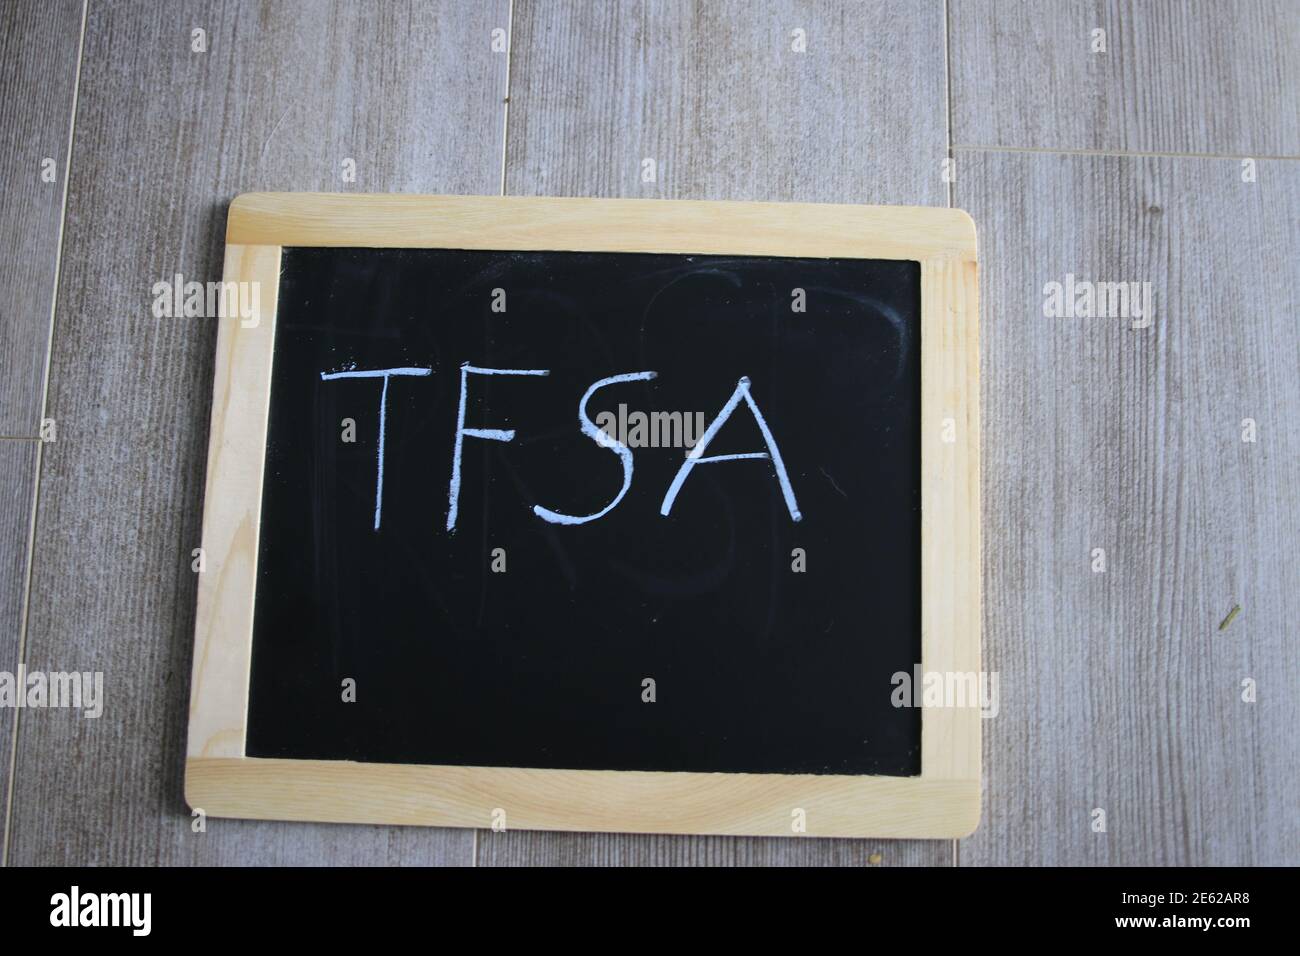 tfsa ha scritto su un bordo di gesso. TFSA è un programma di risparmio canadese Foto Stock